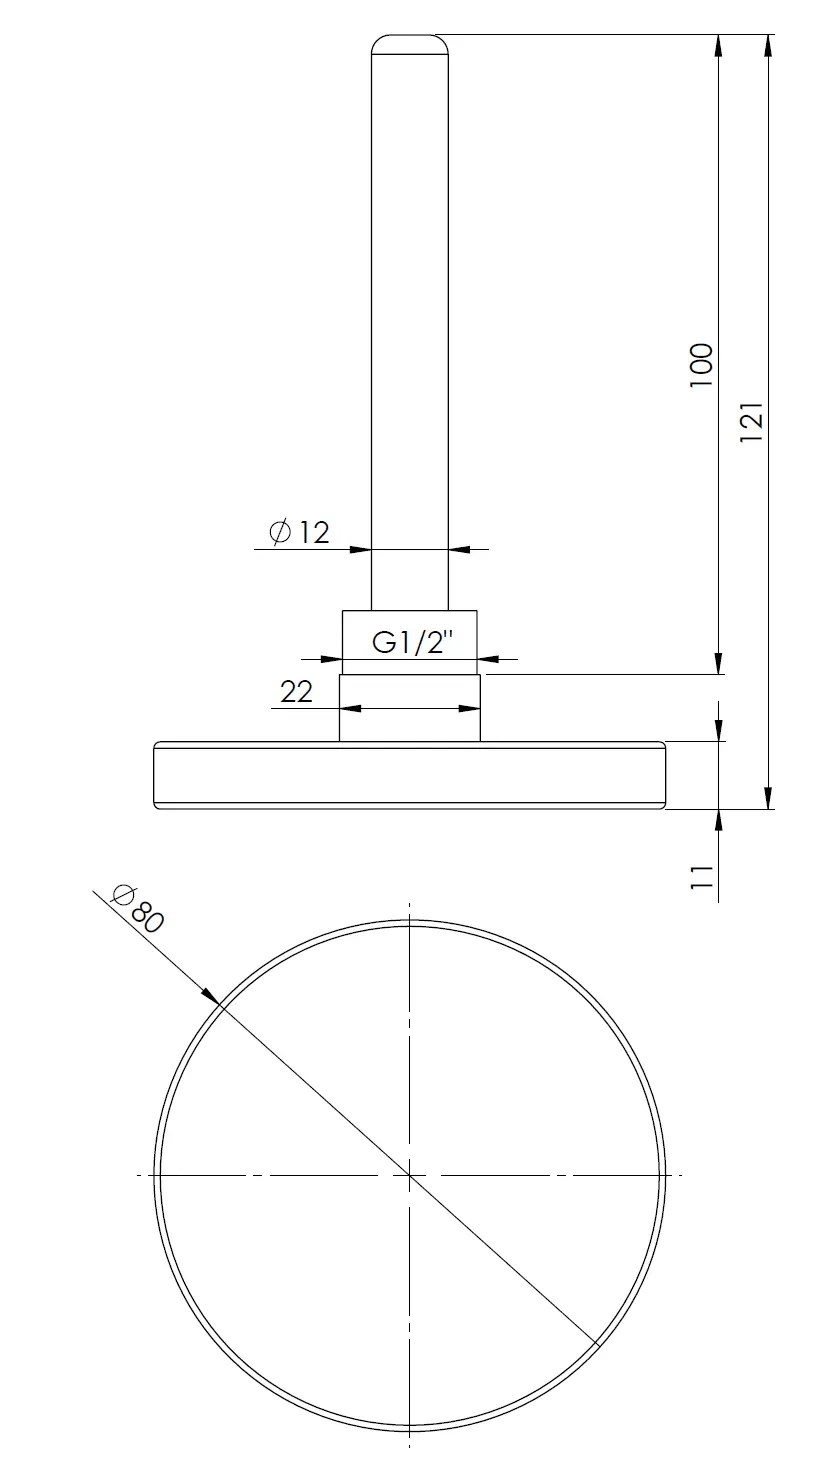 Termometr bimetaliczny BiTh 80, fi80 mm, 0÷120°C, L 100 mm, G1/2", ax, kl. 2 - budowa